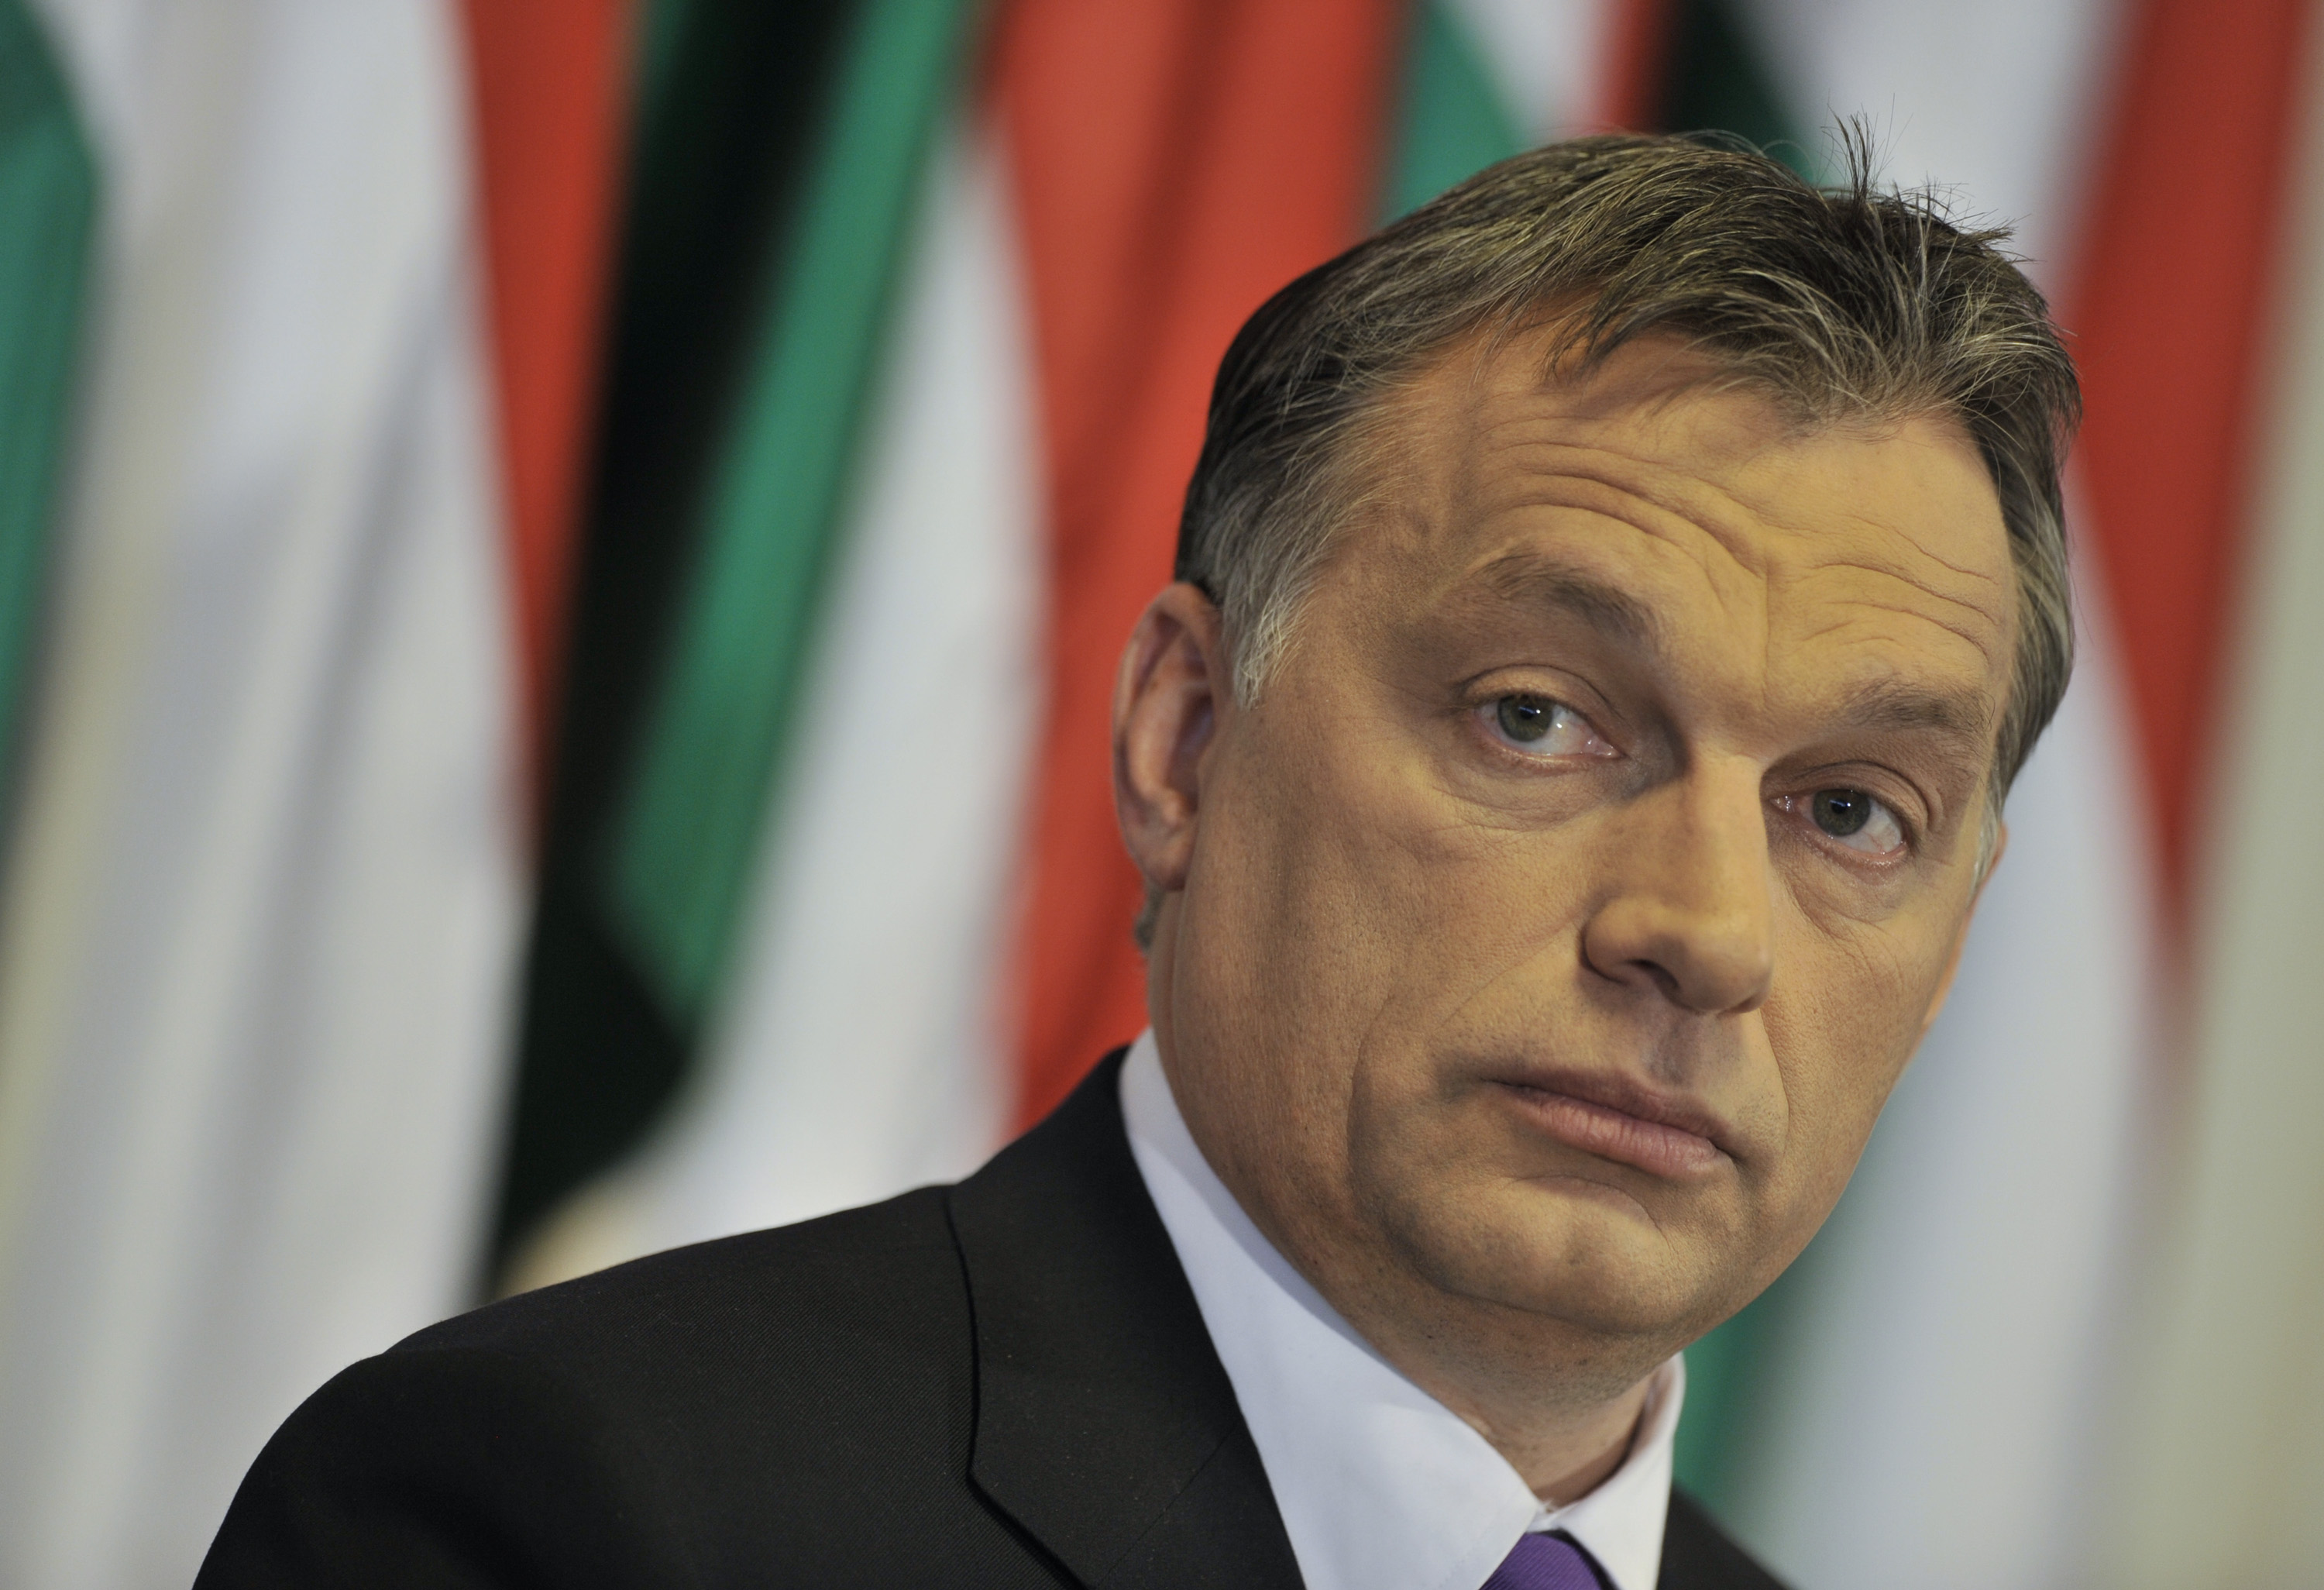 Ki a legjobb képű magyar politikus?